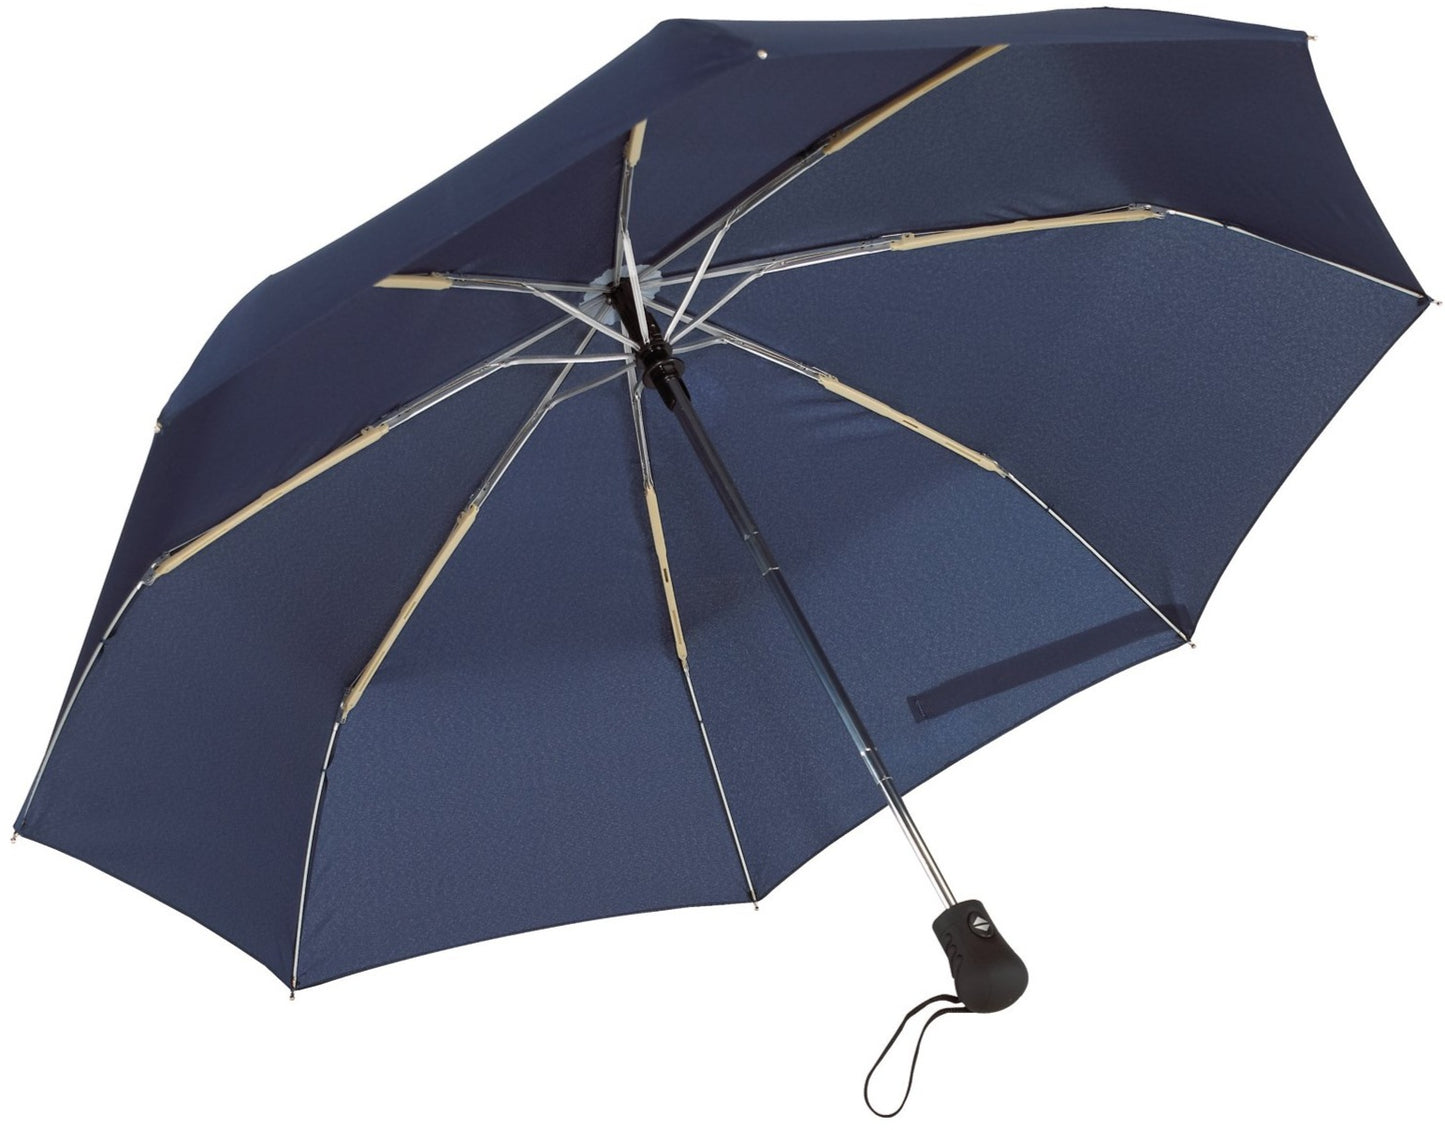 Μπλε μαρίν (σκούρο) ομπρέλα βροχής, μίνι, αντιανεμική και twinmatic.